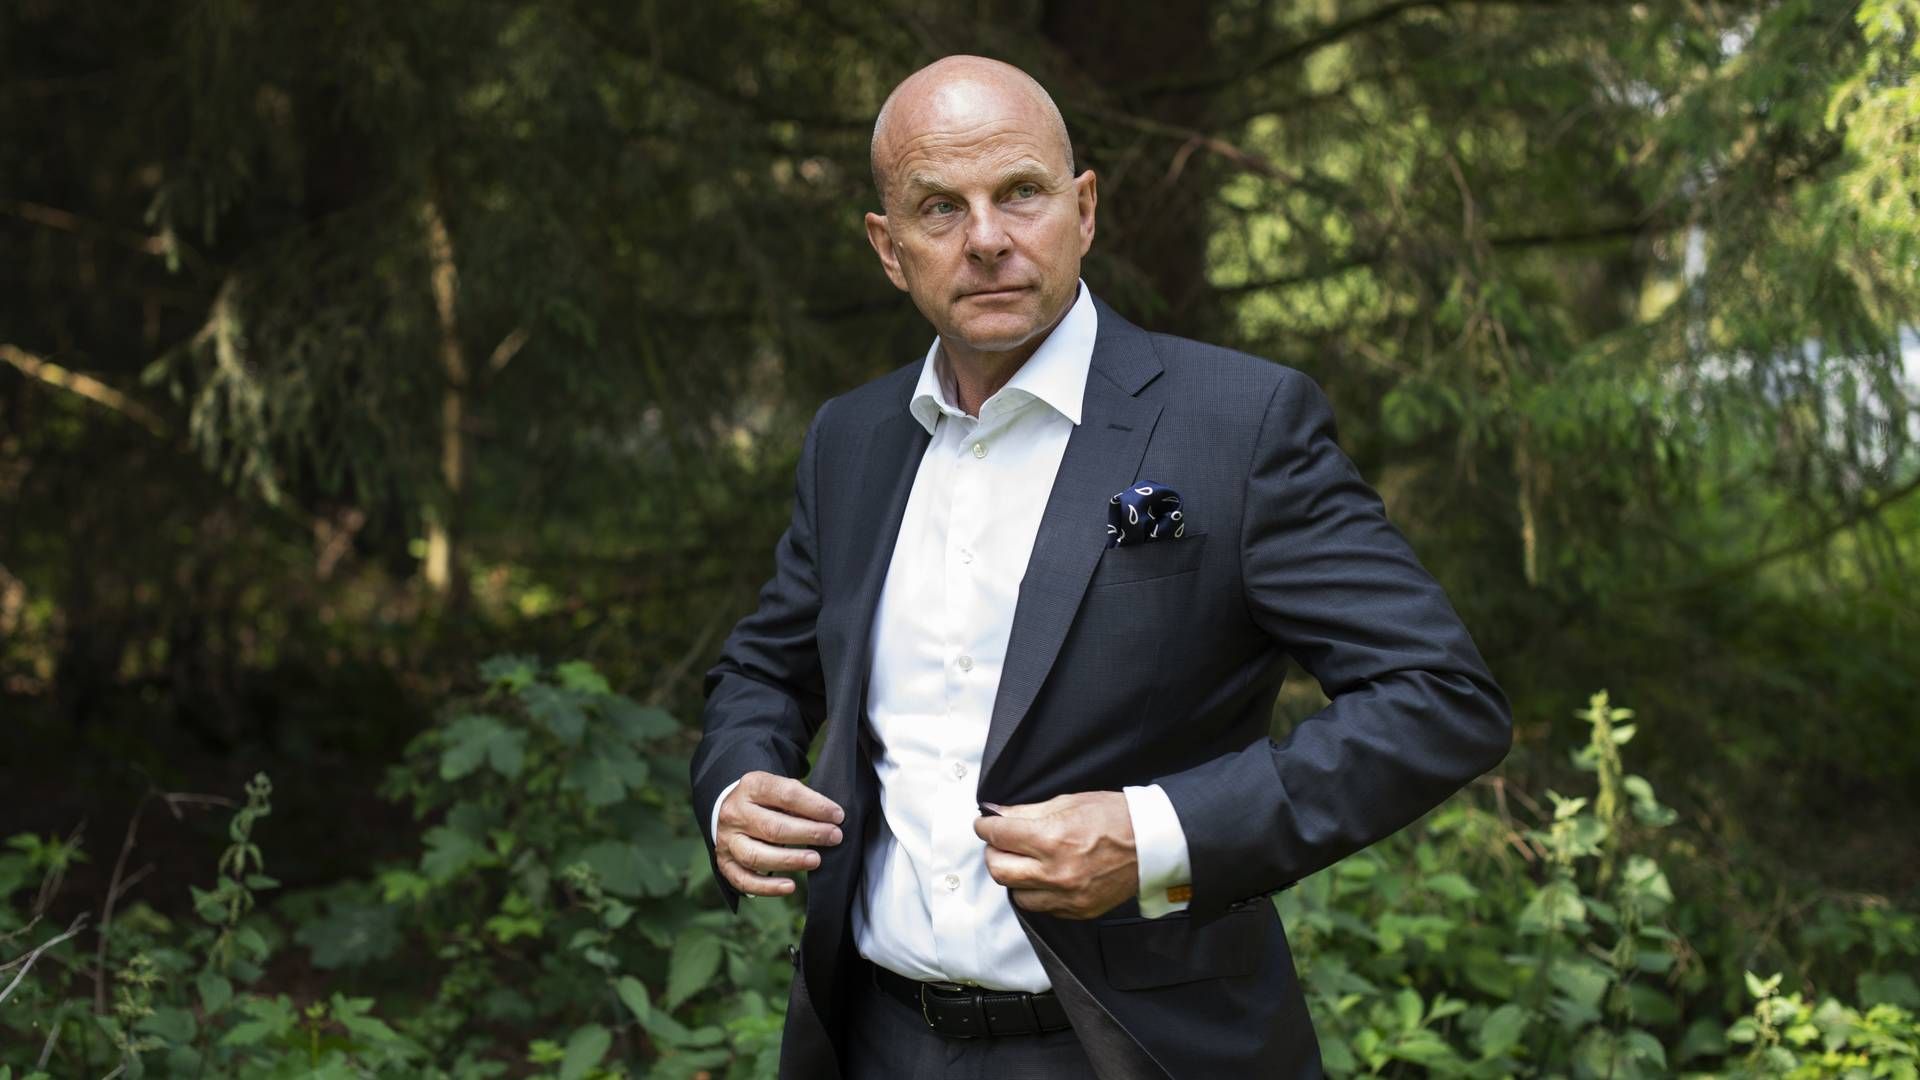 Adm. direktør Carsten Hellmann. | Foto: Gregers Tycho/ERH